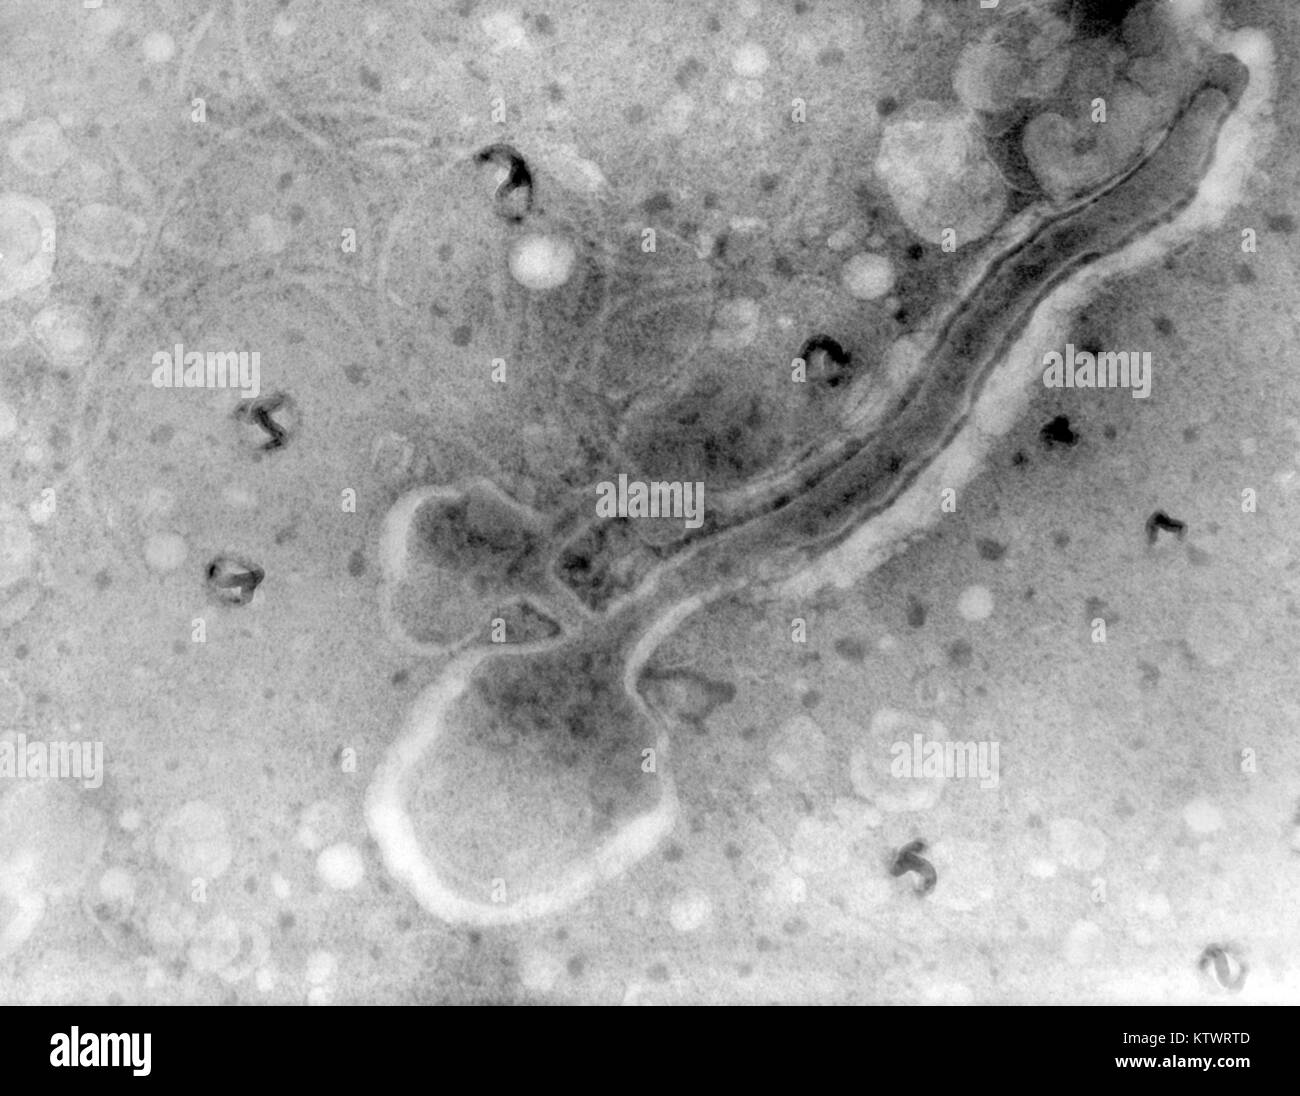 Une Microphotographie d'une bactérie Treponema pallidum. Une photomicrographie de T. pallidum une virulente bactérie, rompue à 6 000 psi, 1970. Treponema pallidum est l'agent responsable de la syphilis. Il contient l'un des plus petits génomes procaryotes comprenant environ 1000 paires de kilobases. Image courtoisie CDC, VDRL Dept. Banque D'Images